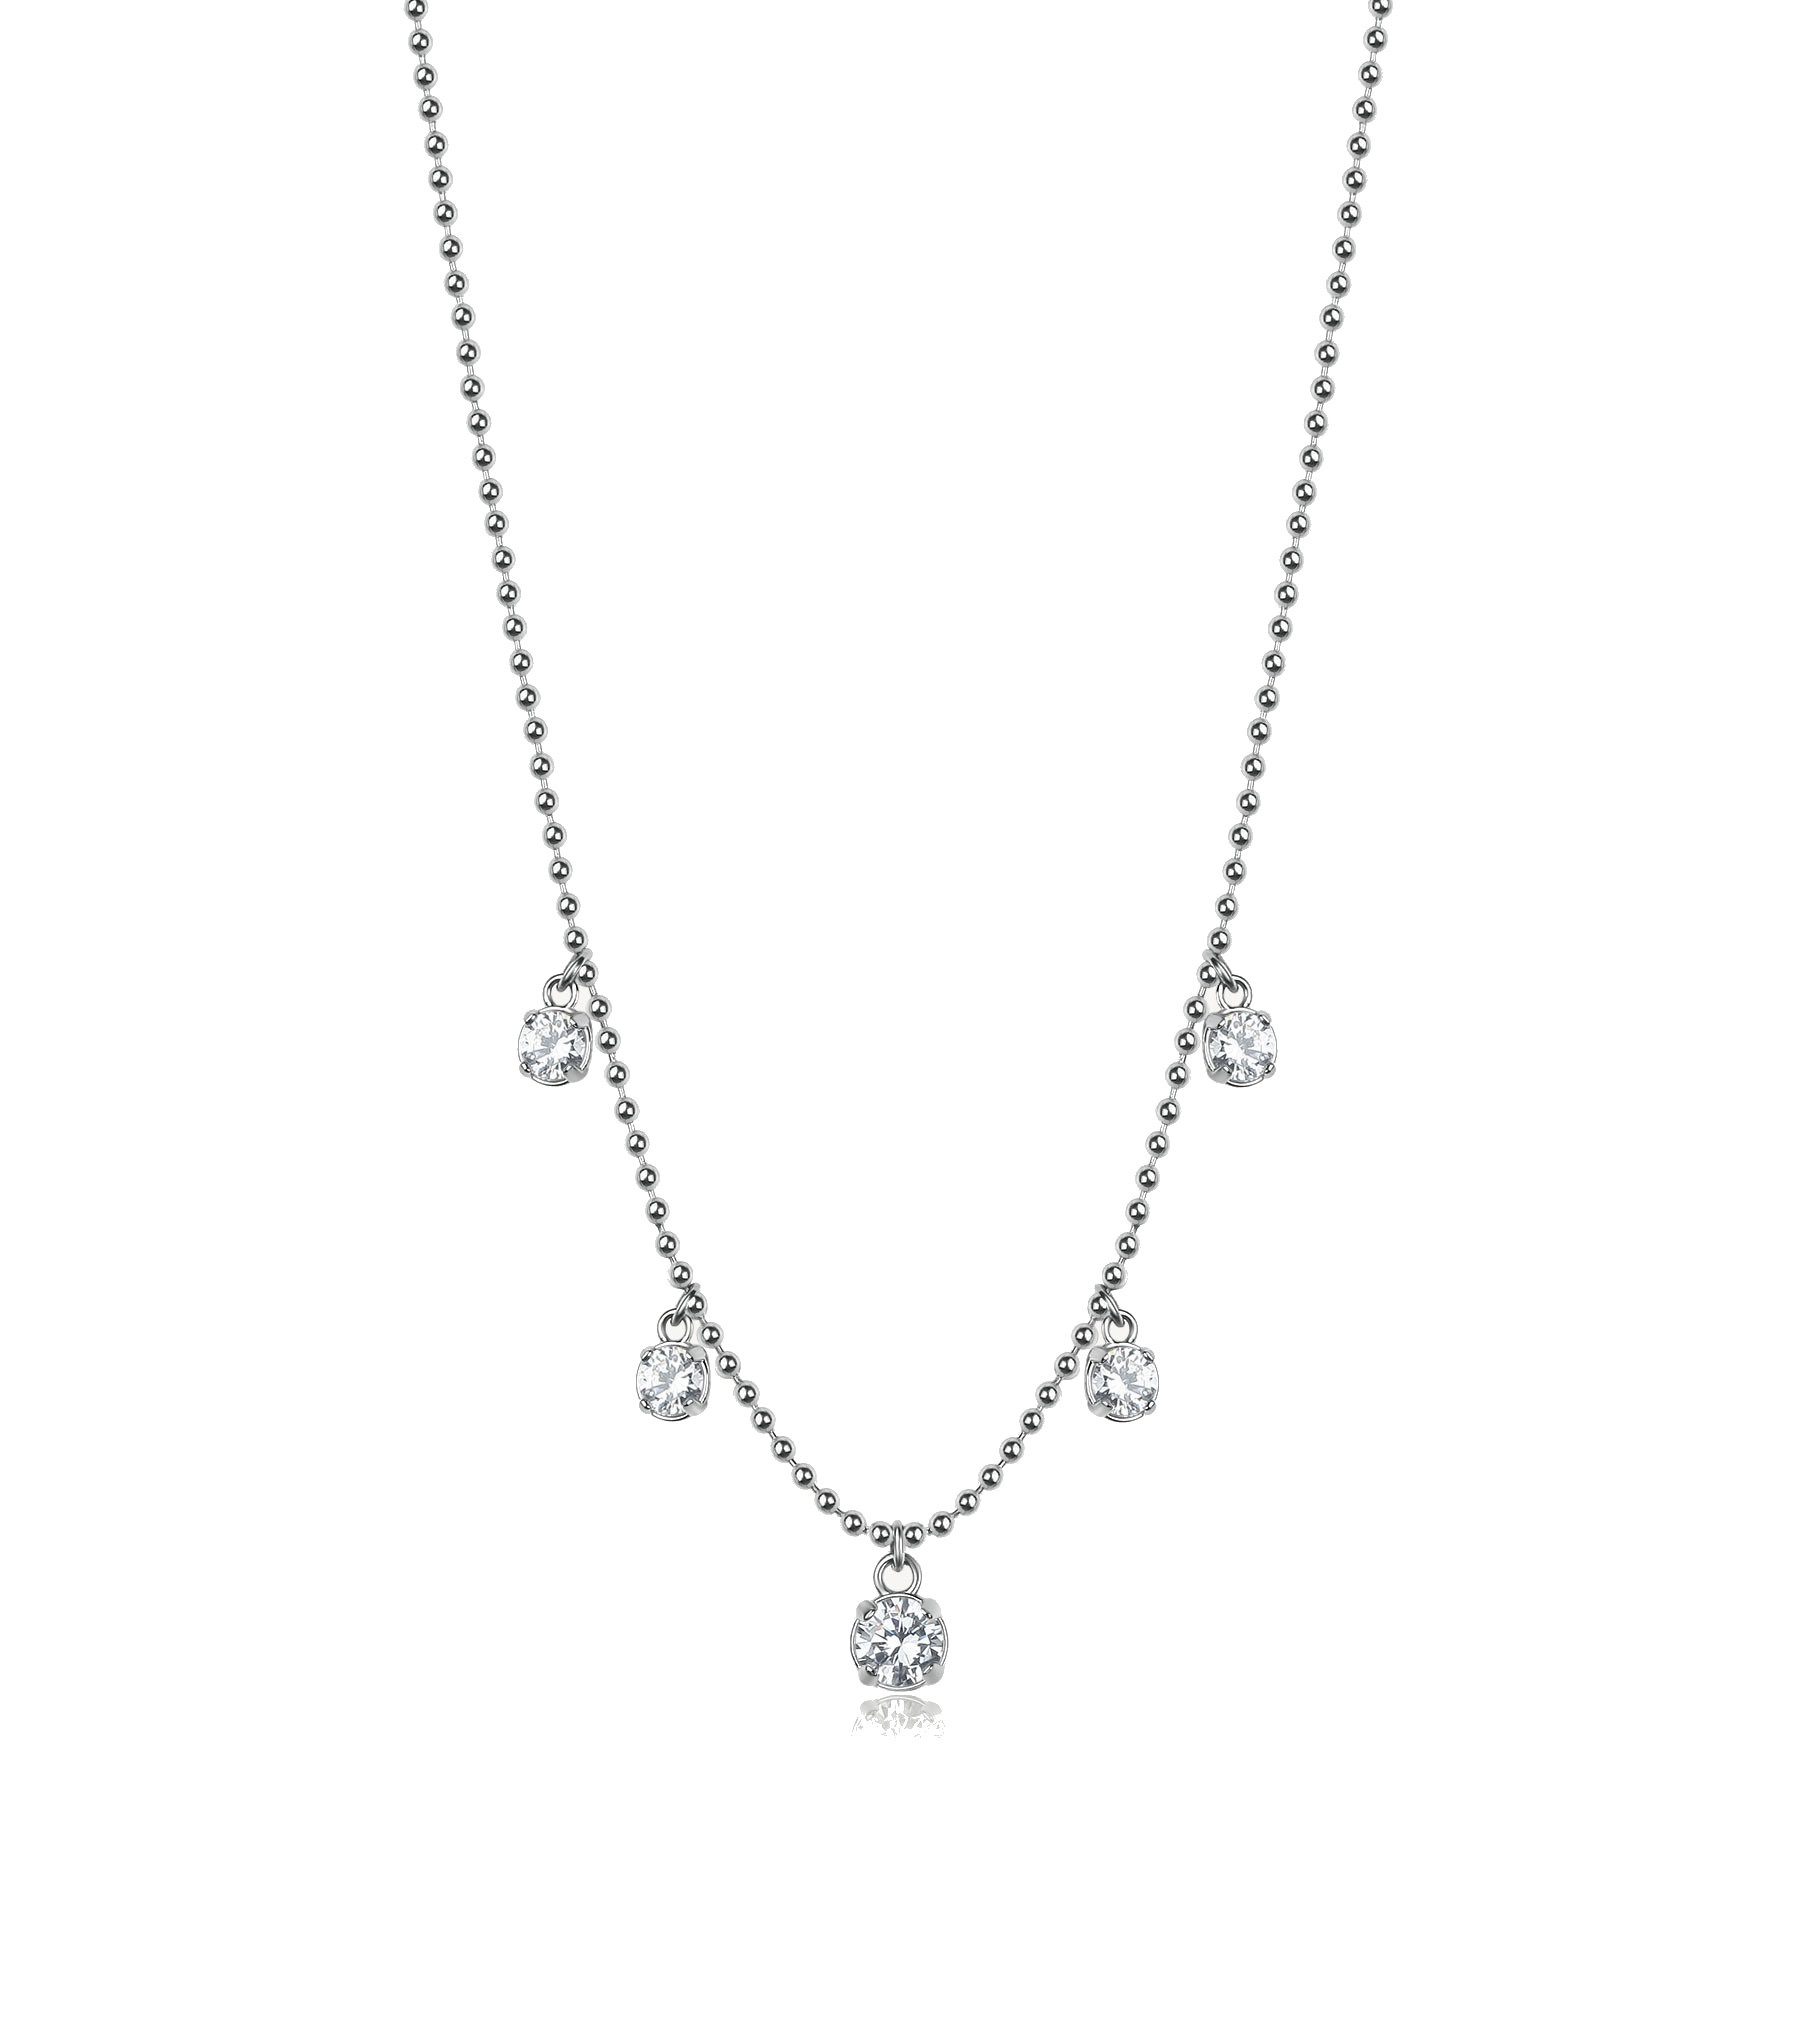 Brosway Blyštivý ocelový náhrdelník se zirkony Desideri BEIN012